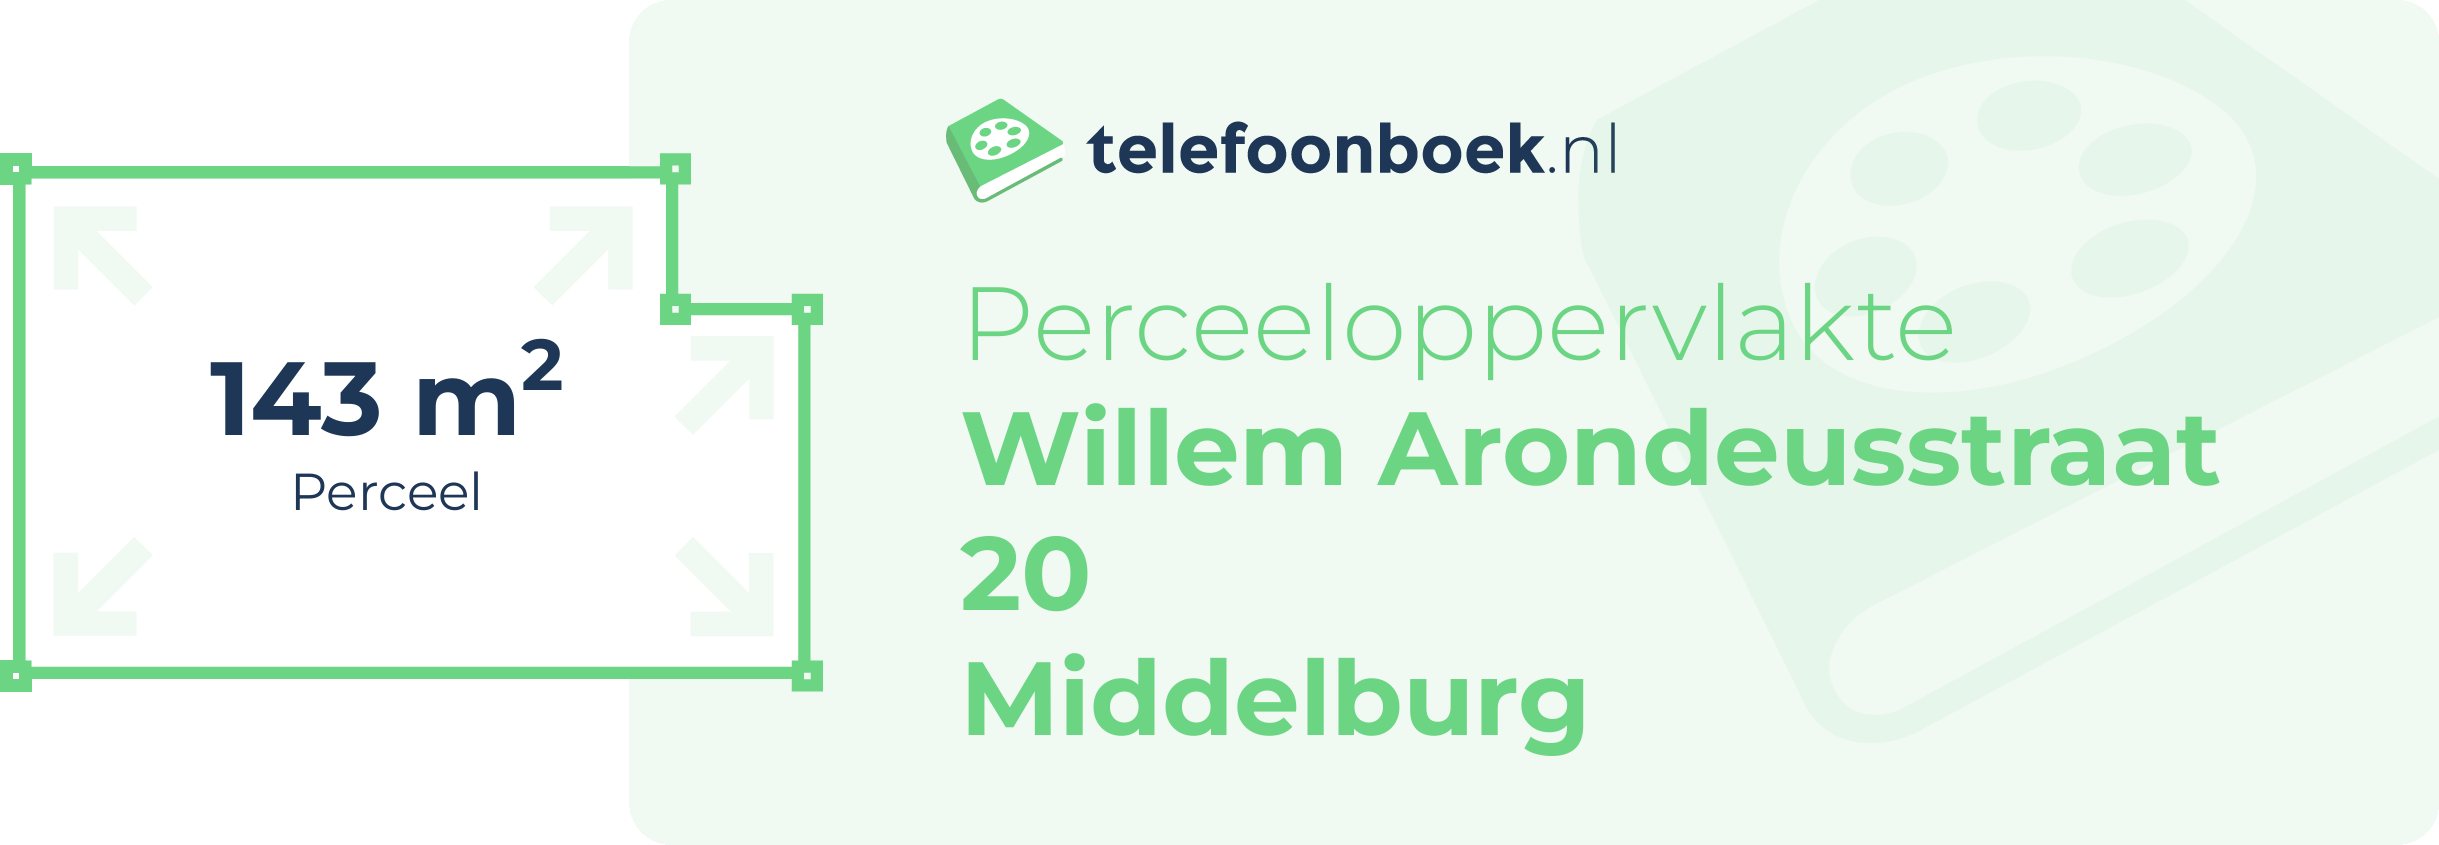 Perceeloppervlakte Willem Arondeusstraat 20 Middelburg